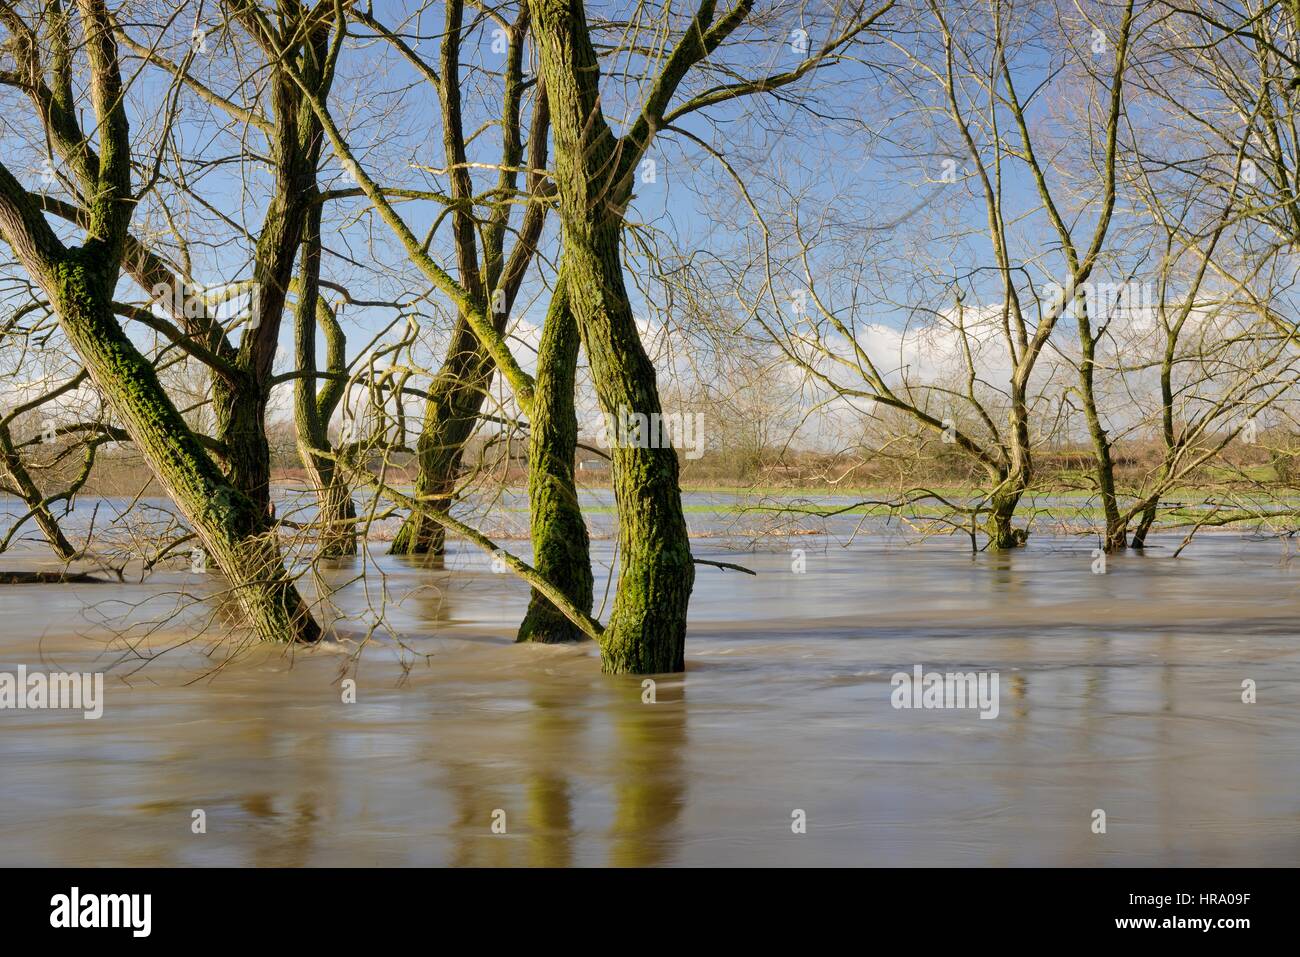 Saules bordant la Rivière Avon en partie submergé après des semaines de forte pluie a fait éclater ses rives, Lacock, Wiltshire, Royaume-Uni, février 2014. Banque D'Images